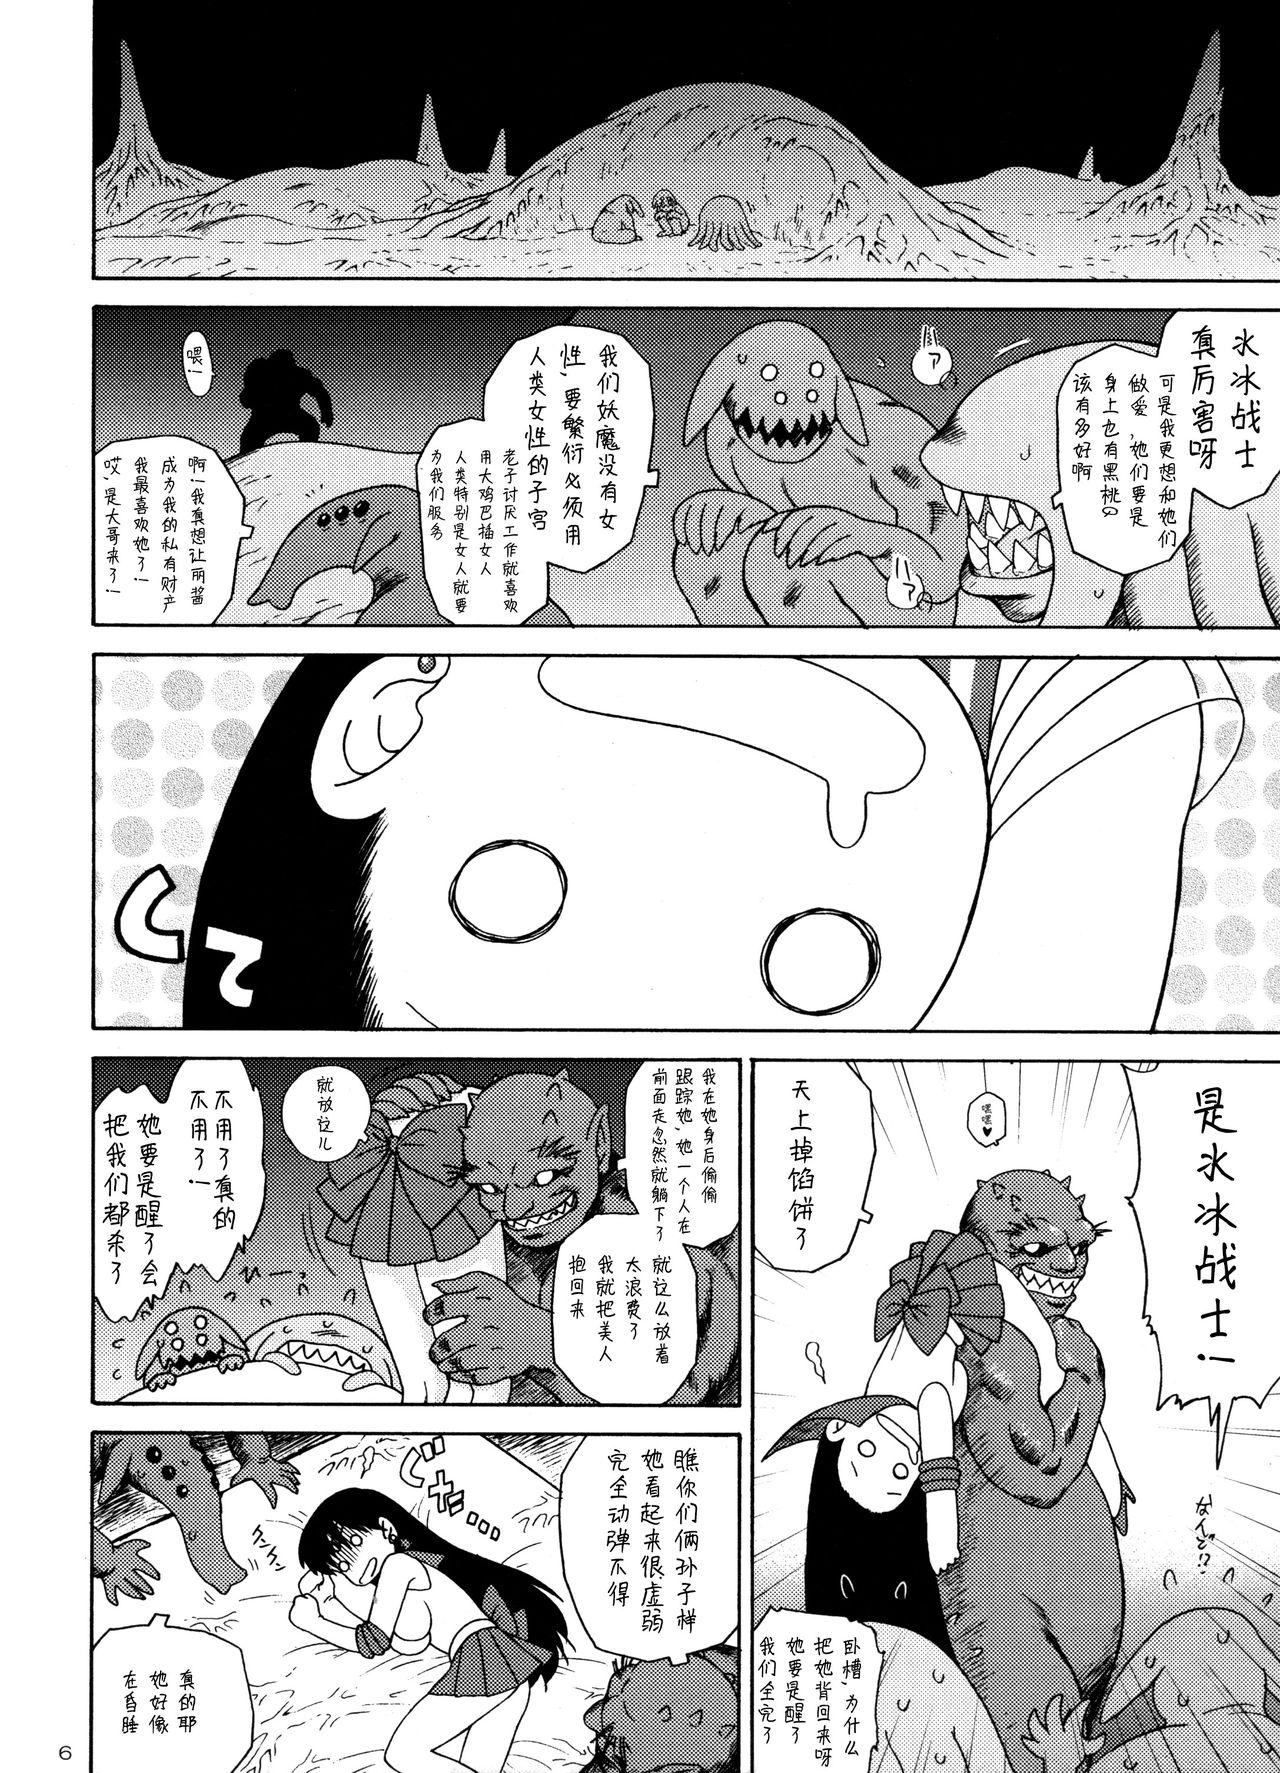 Nalgas QUEEN OF SPADES - 黑桃皇后 - Sailor moon Pov Sex - Page 9